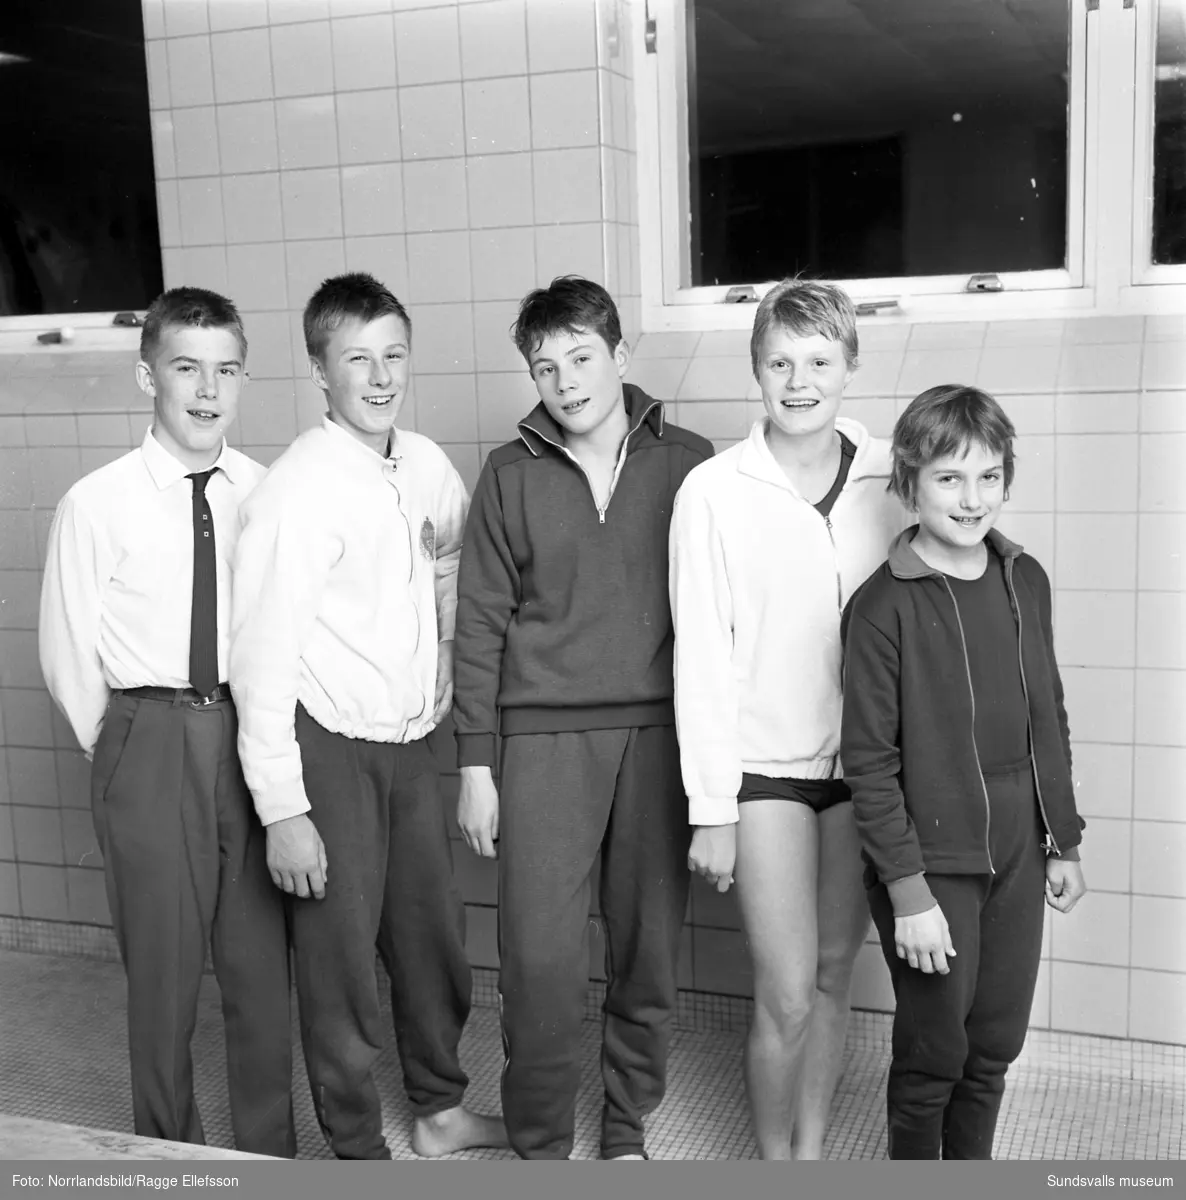 Bildserie från regionmästerskapet i Expressens Sum-Sim i Timrå Simhall. De unga simtalangerna poserar på bassängkanten.